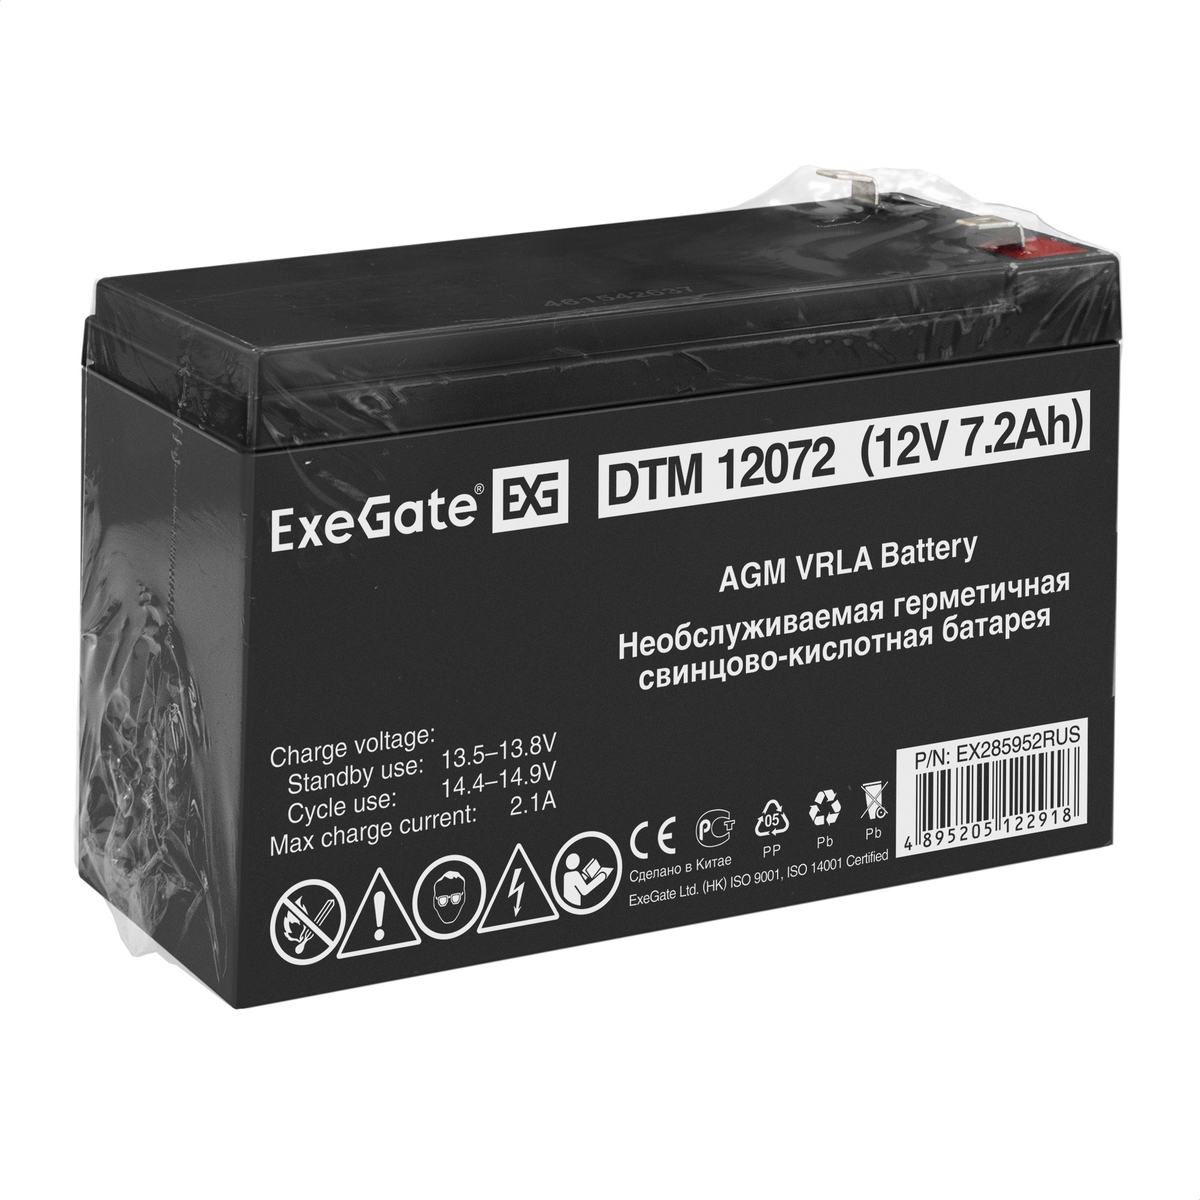 Battery ExeGate DTM 12072